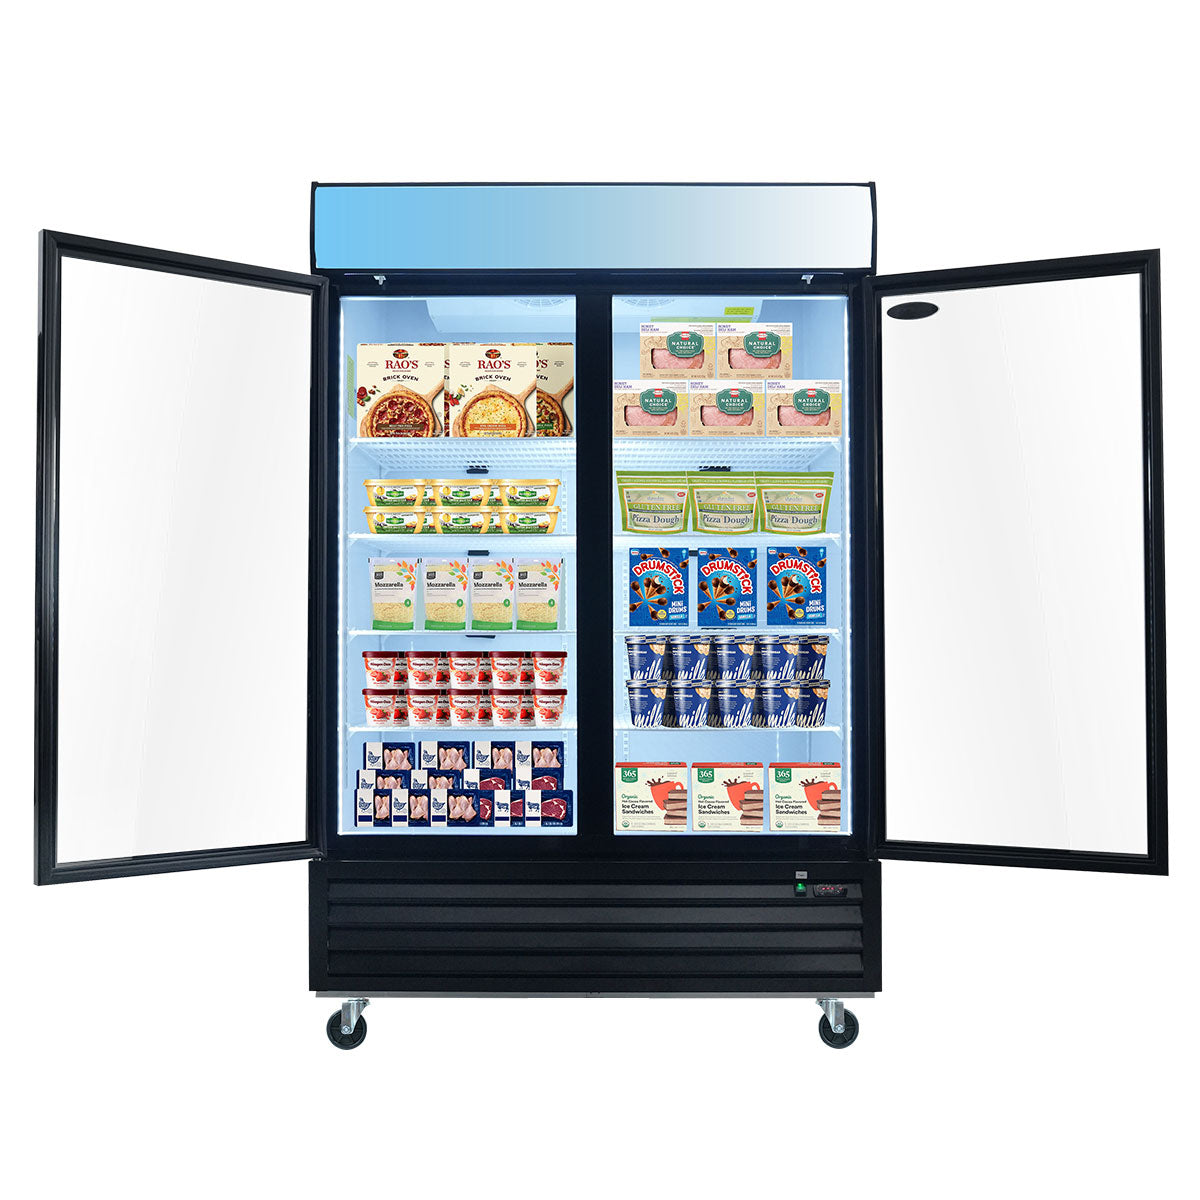 ORIKOOL SD1390F 54" Double Swing Glass Door Merchandiser Freezer 44.7 cu.ft. Commercial Freezer with LED Top Panel, Black